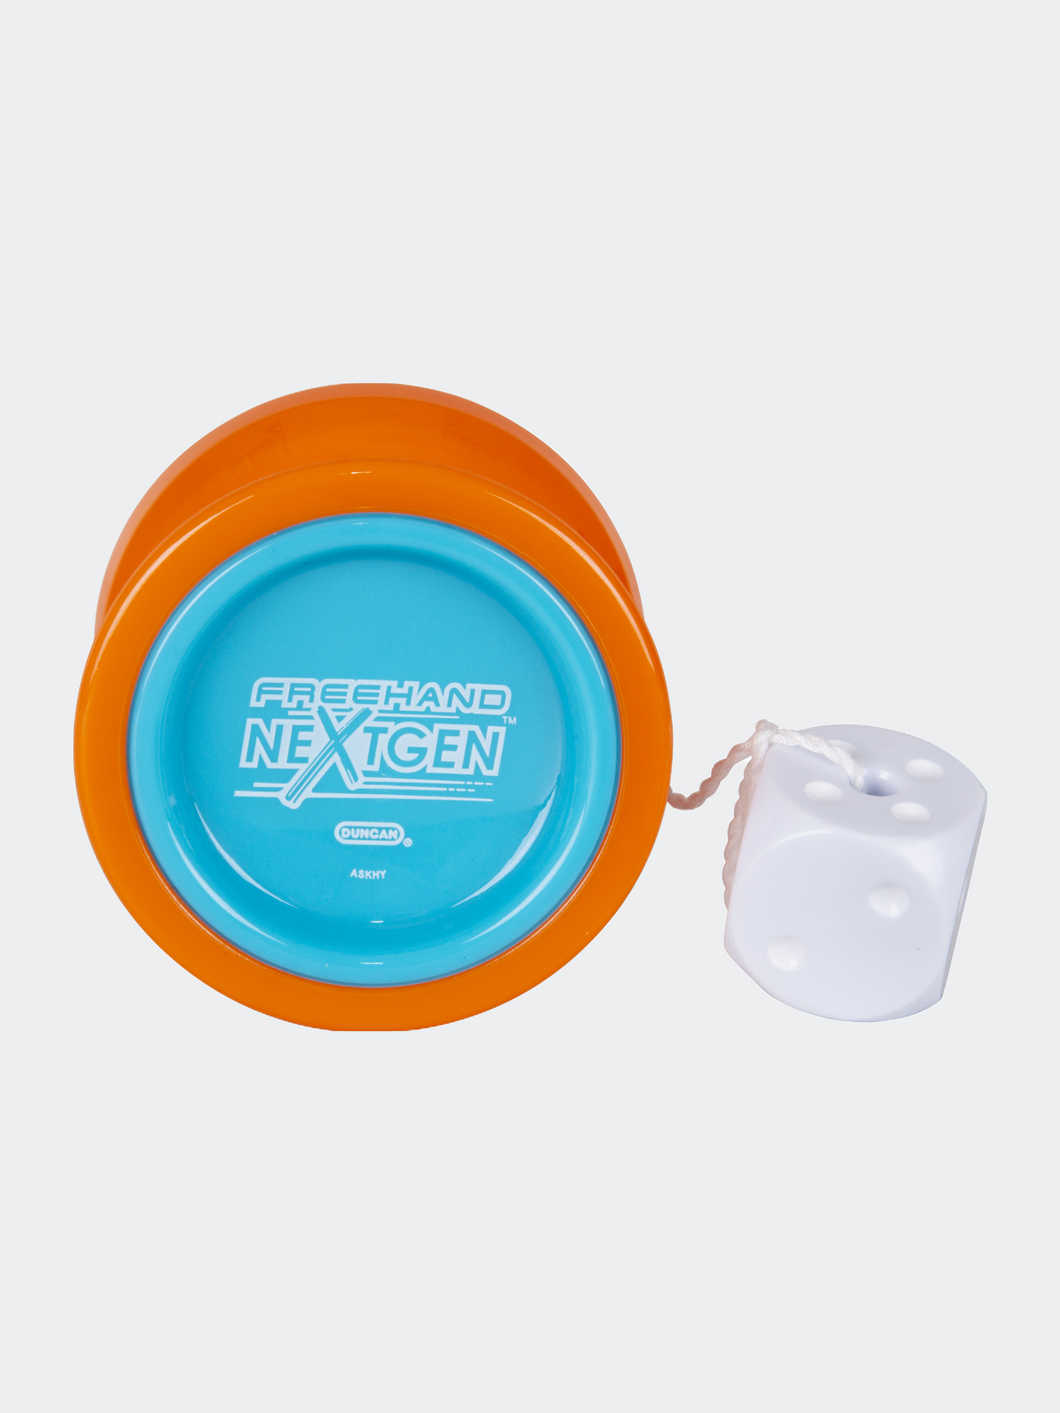 Freehand Nextgen Yo-Yo, Unresponsive Pro Level Yo-Yo, Concave Bearing - Orange/Blue